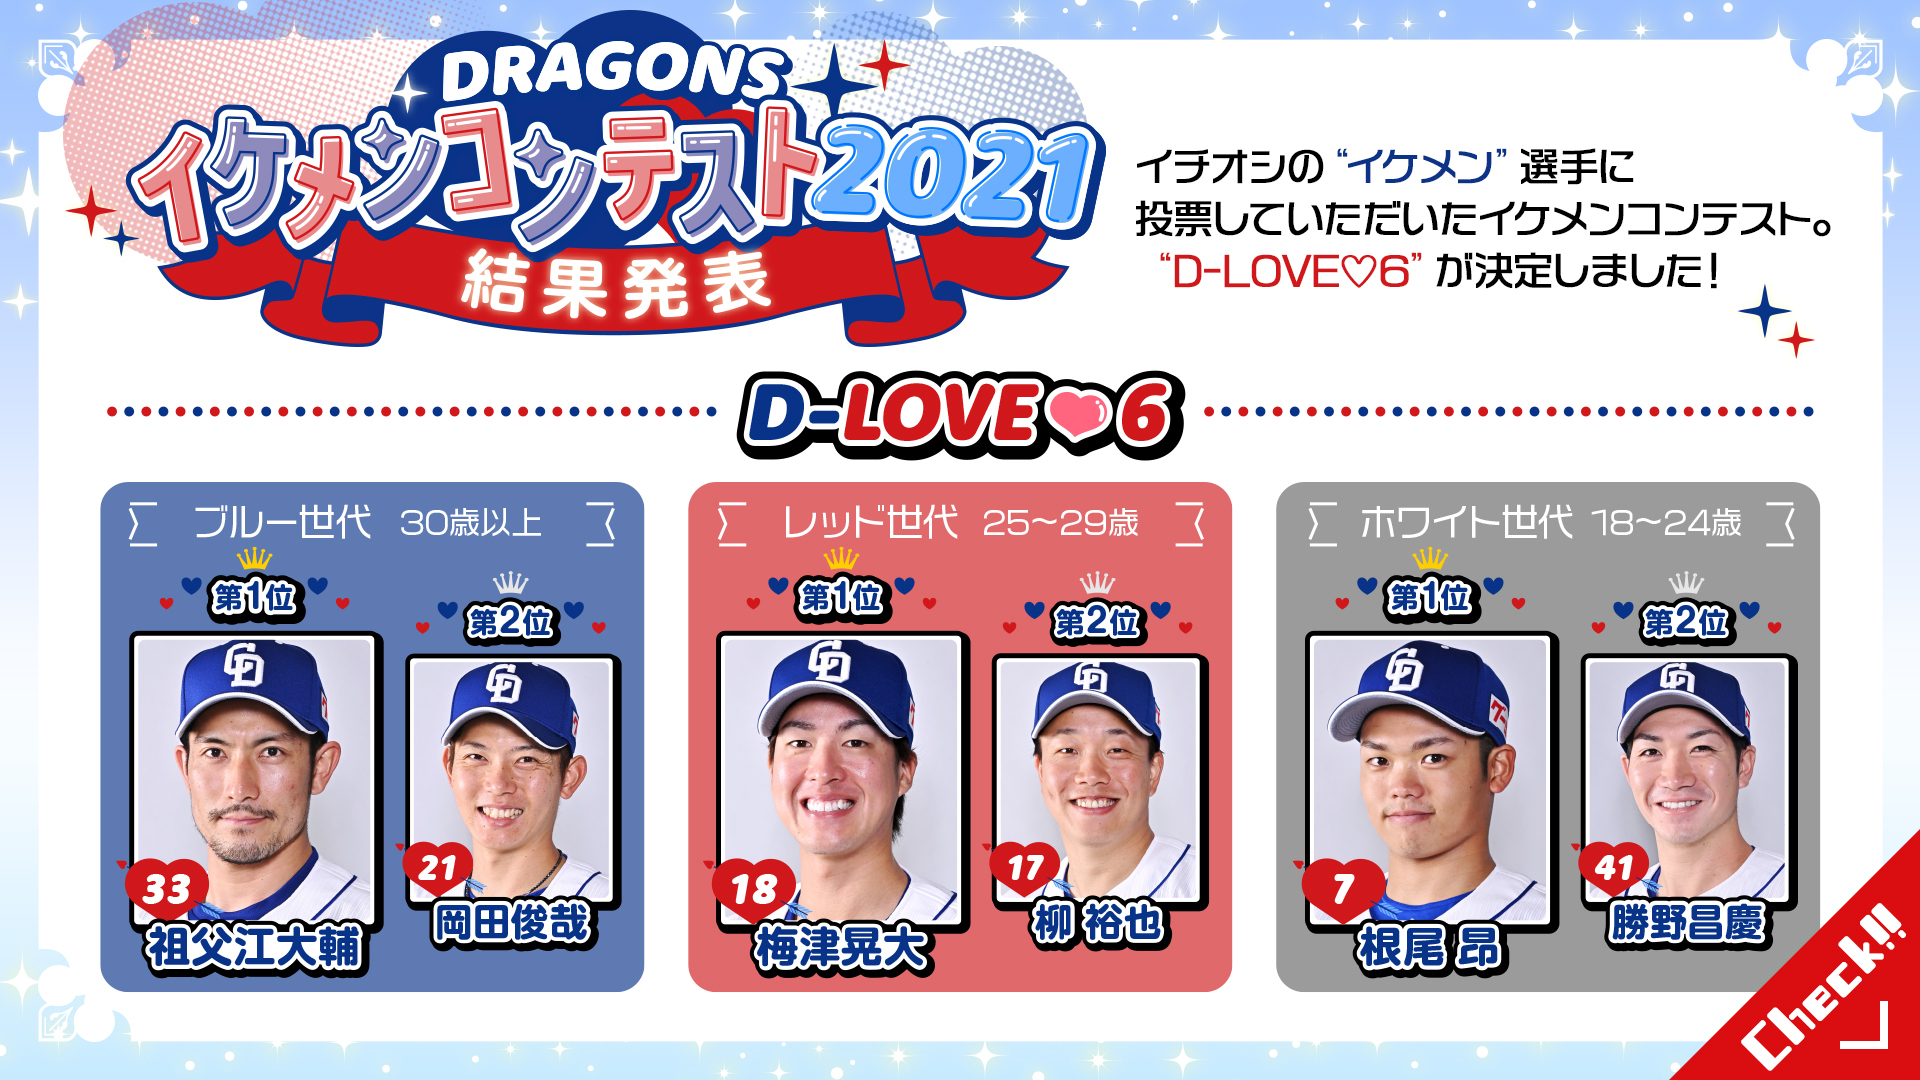 ドラゴンズイケメンコンテスト2021 D-LOVE6